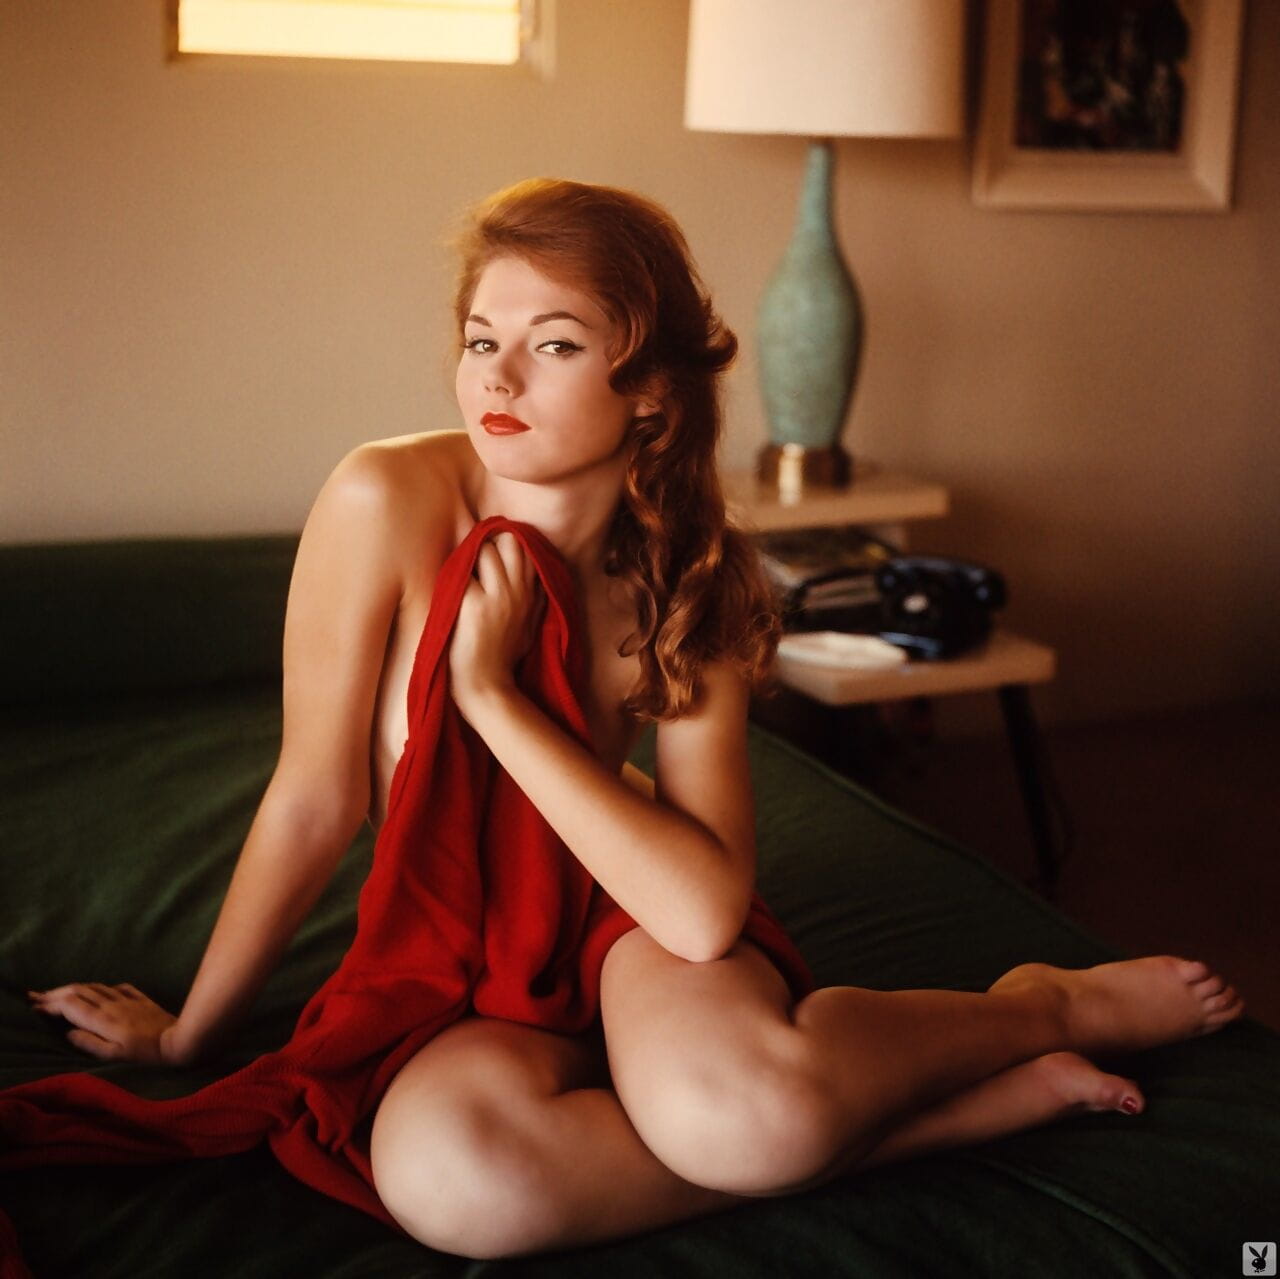 milf Kathy douglas bloot haar Heerlijk natuurlijke curves tijdens vintage fotoshoot